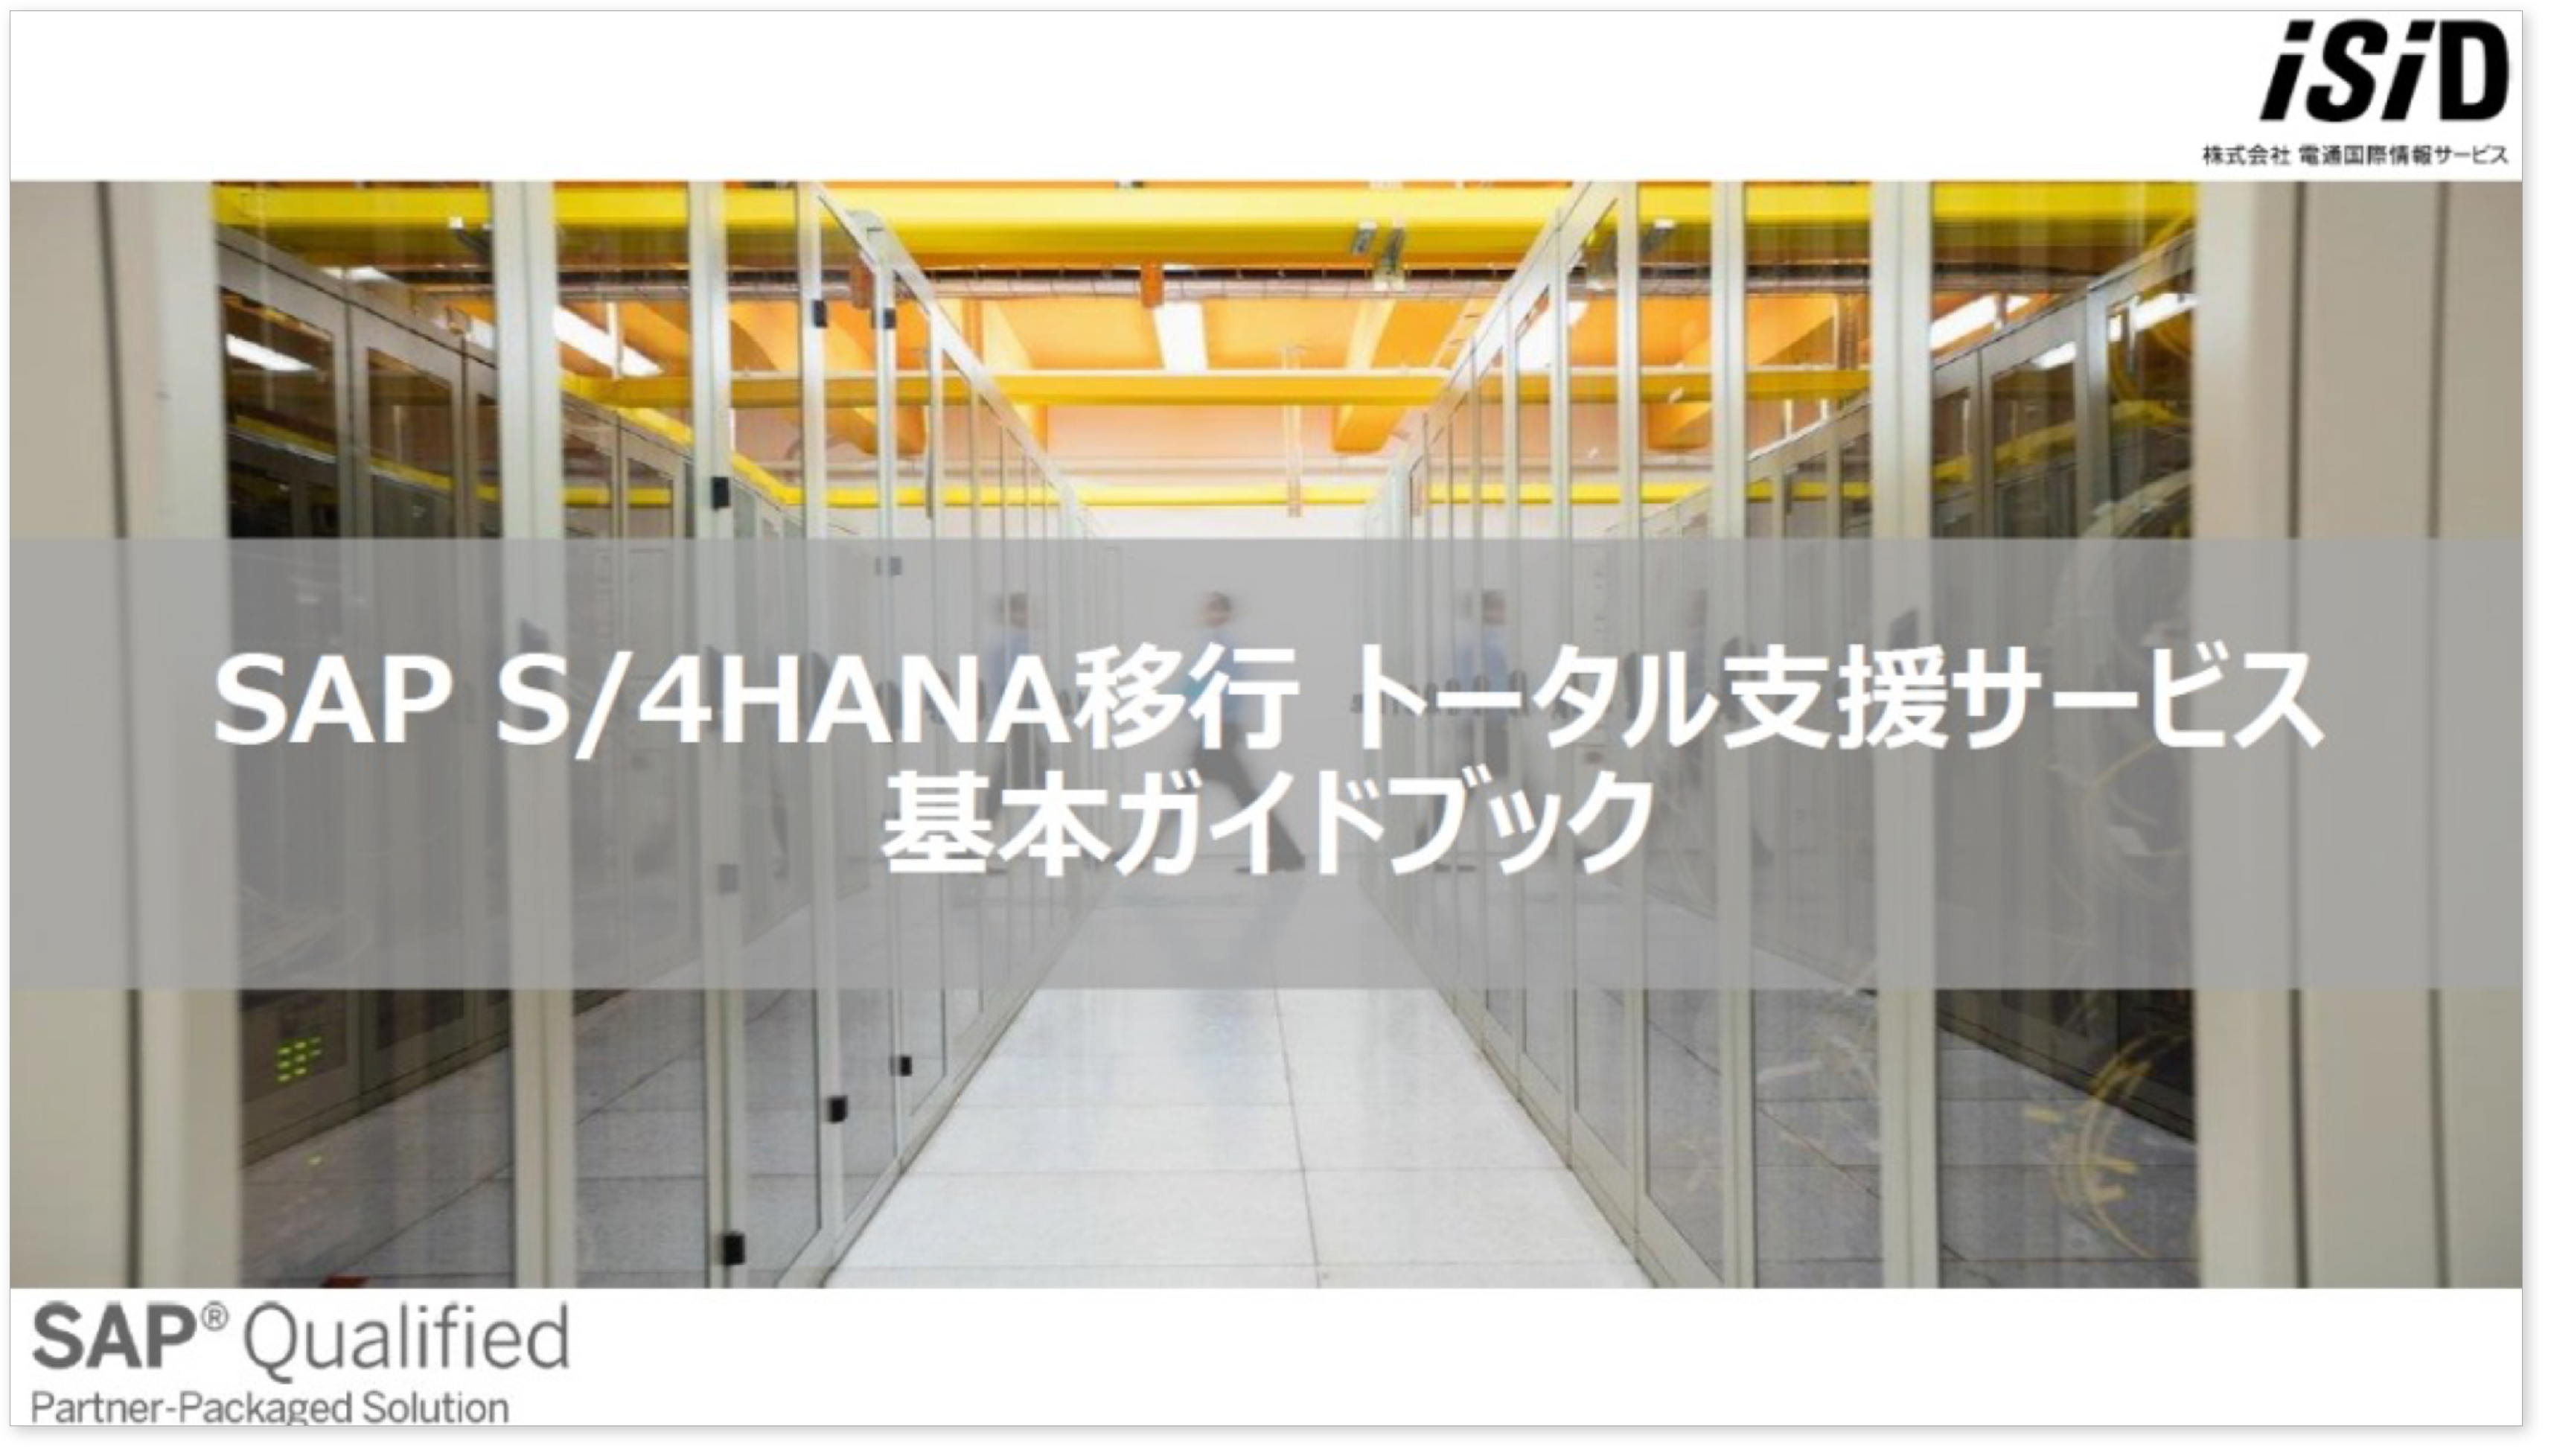 ［ガイドブック］SAP S/4HANA移行トータル支援サービス 基本ガイドブック